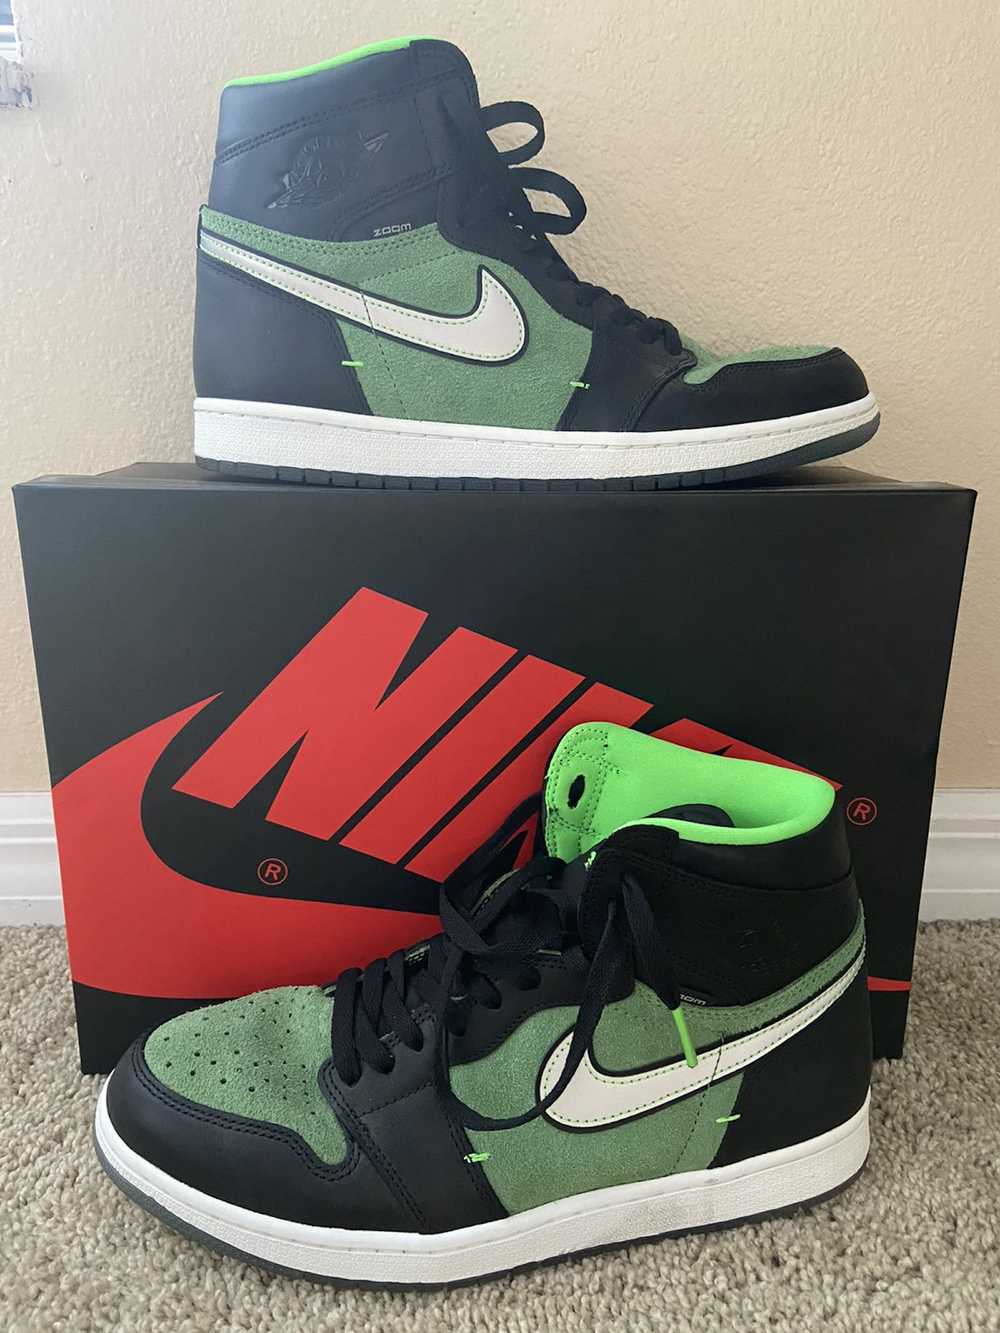 Jordan Brand × Nike Air Jordan 1 “Zoom Zen Green” - image 1